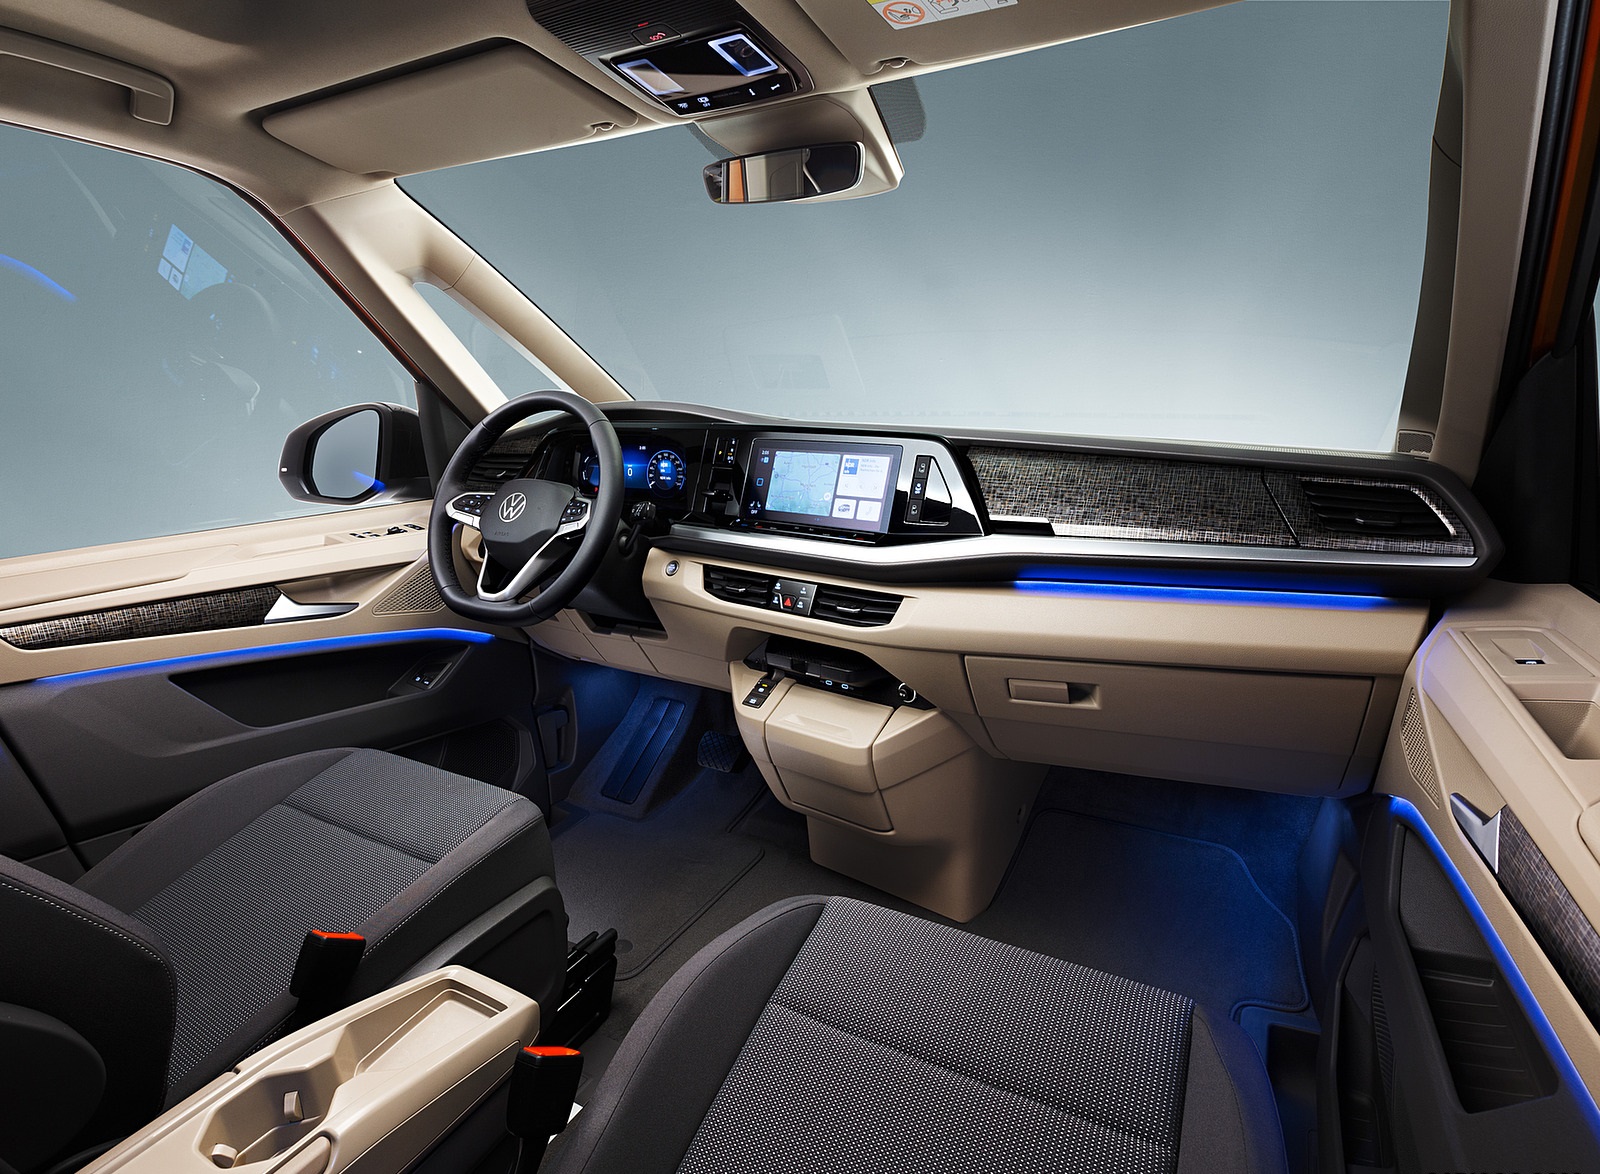 2022 Volkswagen Multivan Interior Wallpapers #6 of 10